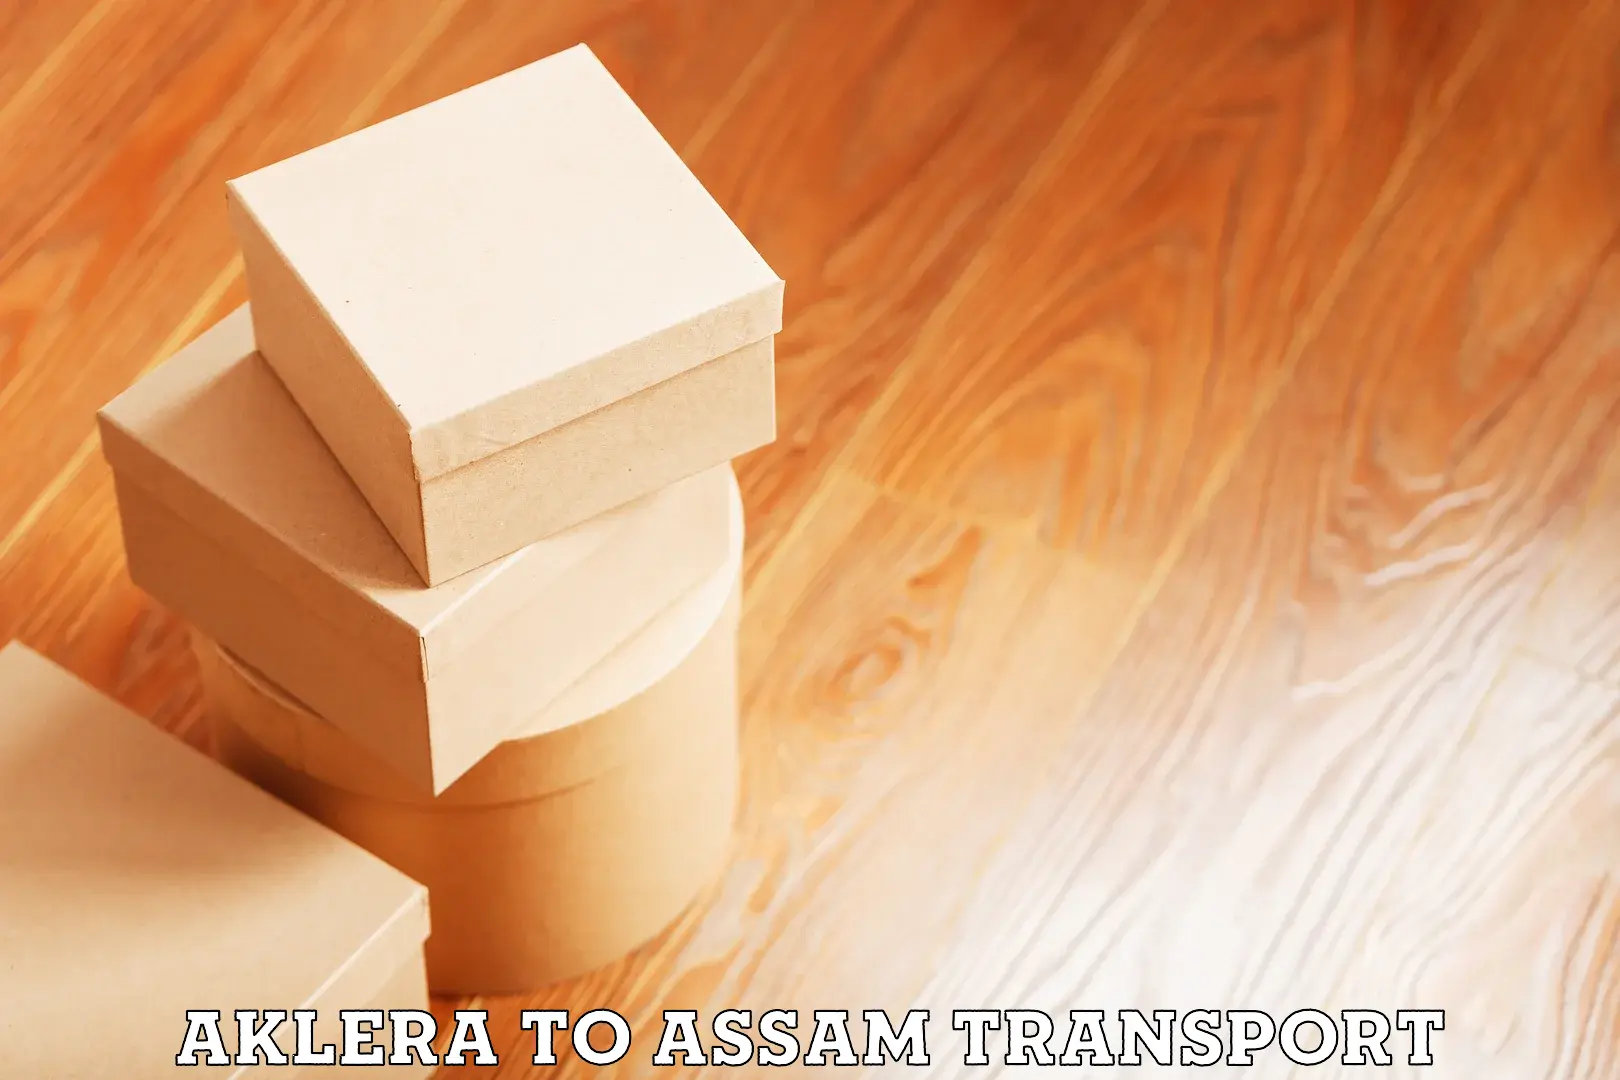 Interstate transport services Aklera to Assam